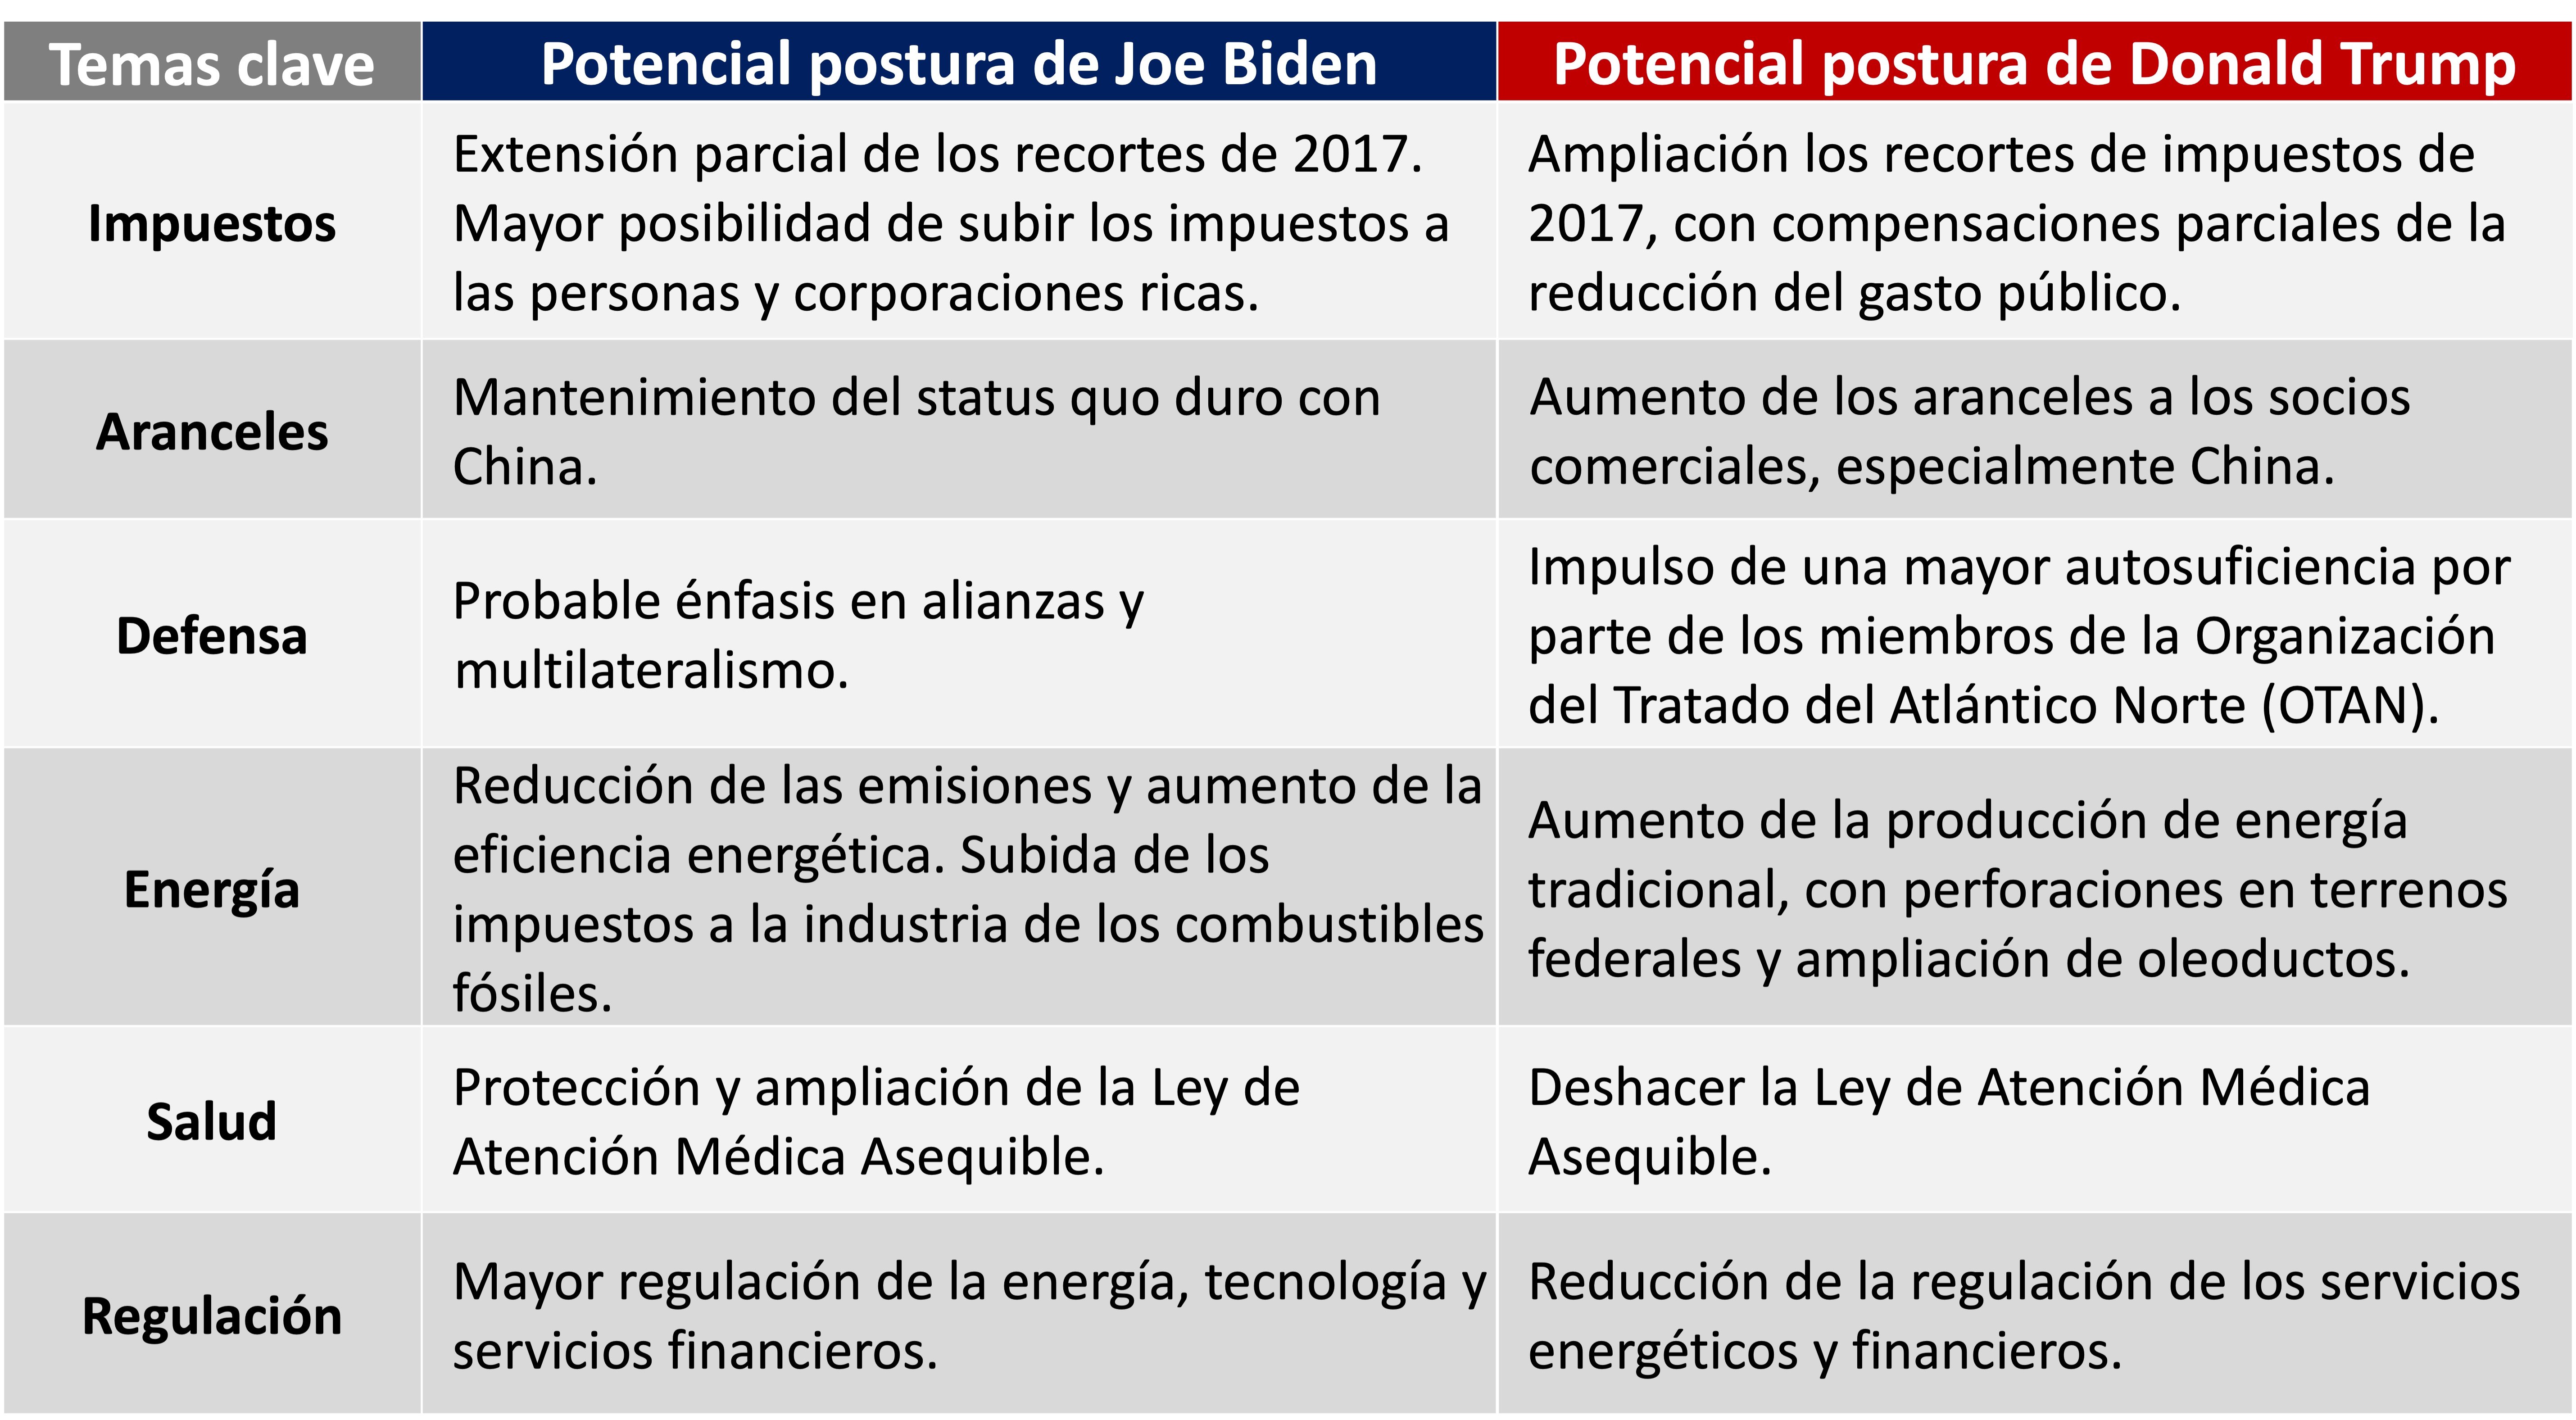 Esta tabla muestra las posibles posturas del presidente Joe Biden y del presidente Donald Trump en los siguientes temas clave: impuestos, aranceles, defensa, energía, salud y regulación.